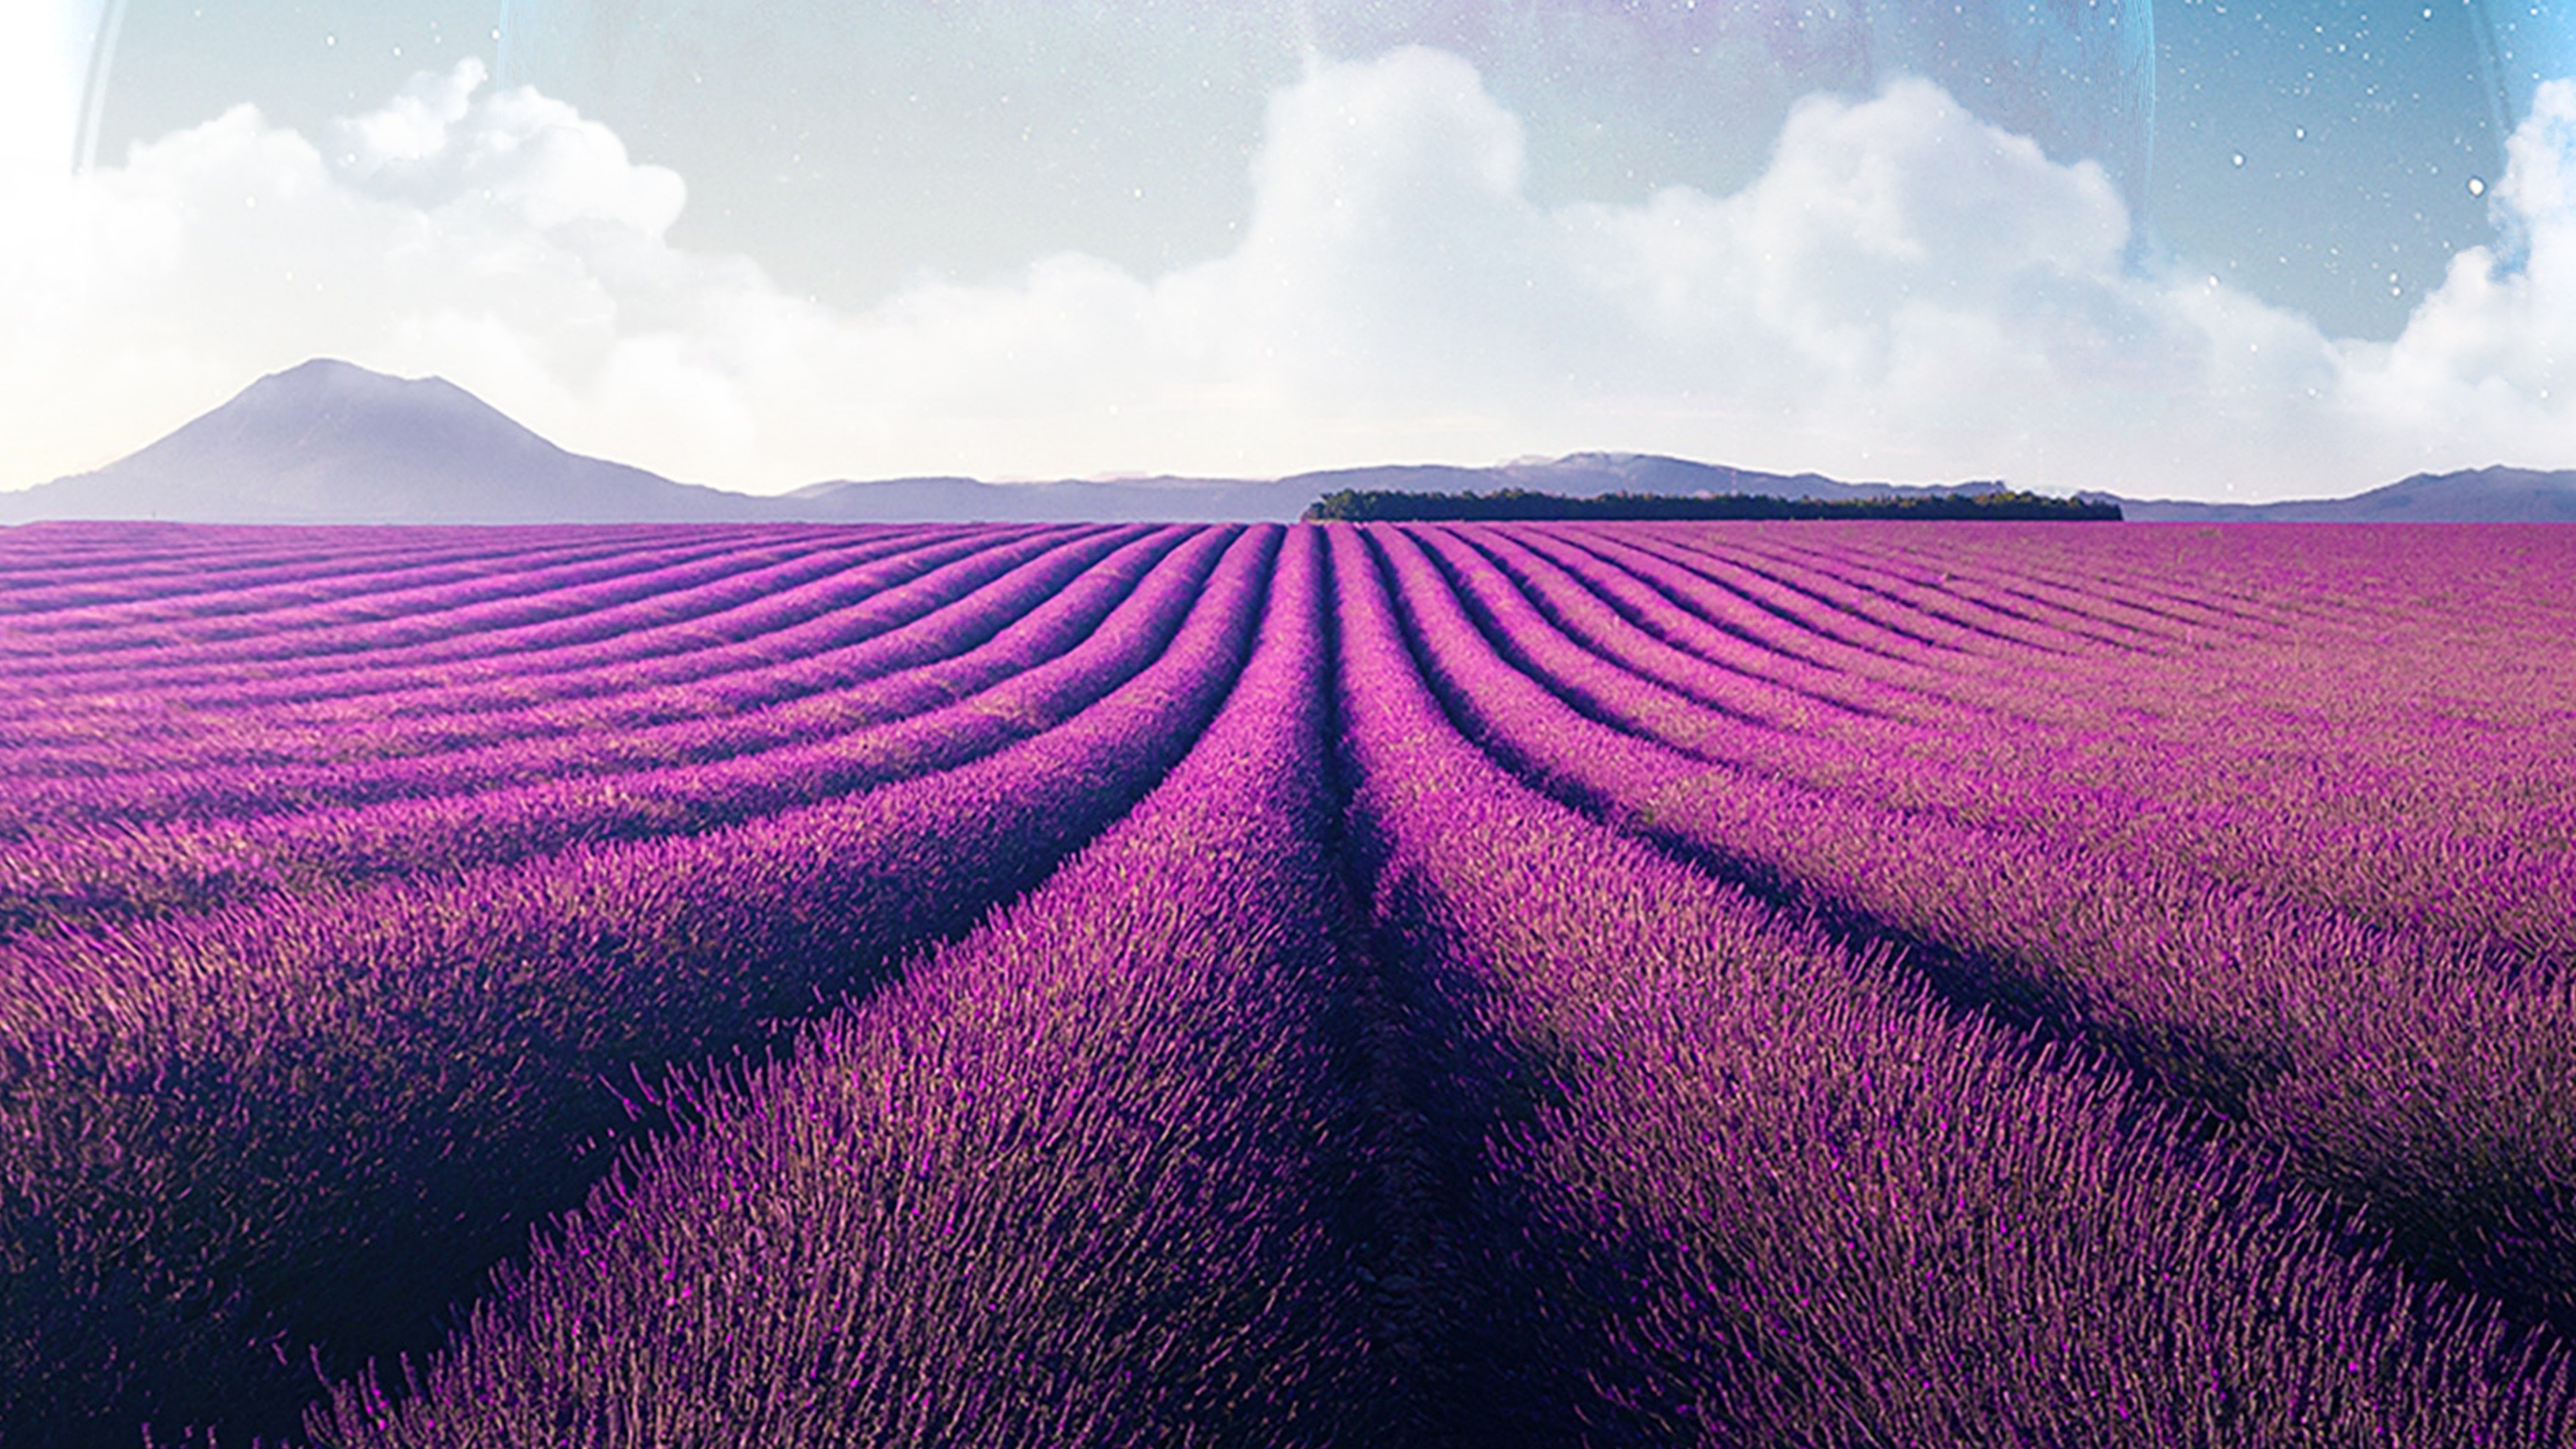 Lavender fields 4K Wallpaper, Lavender farm, Landscape, Planet, Surreal, Nature